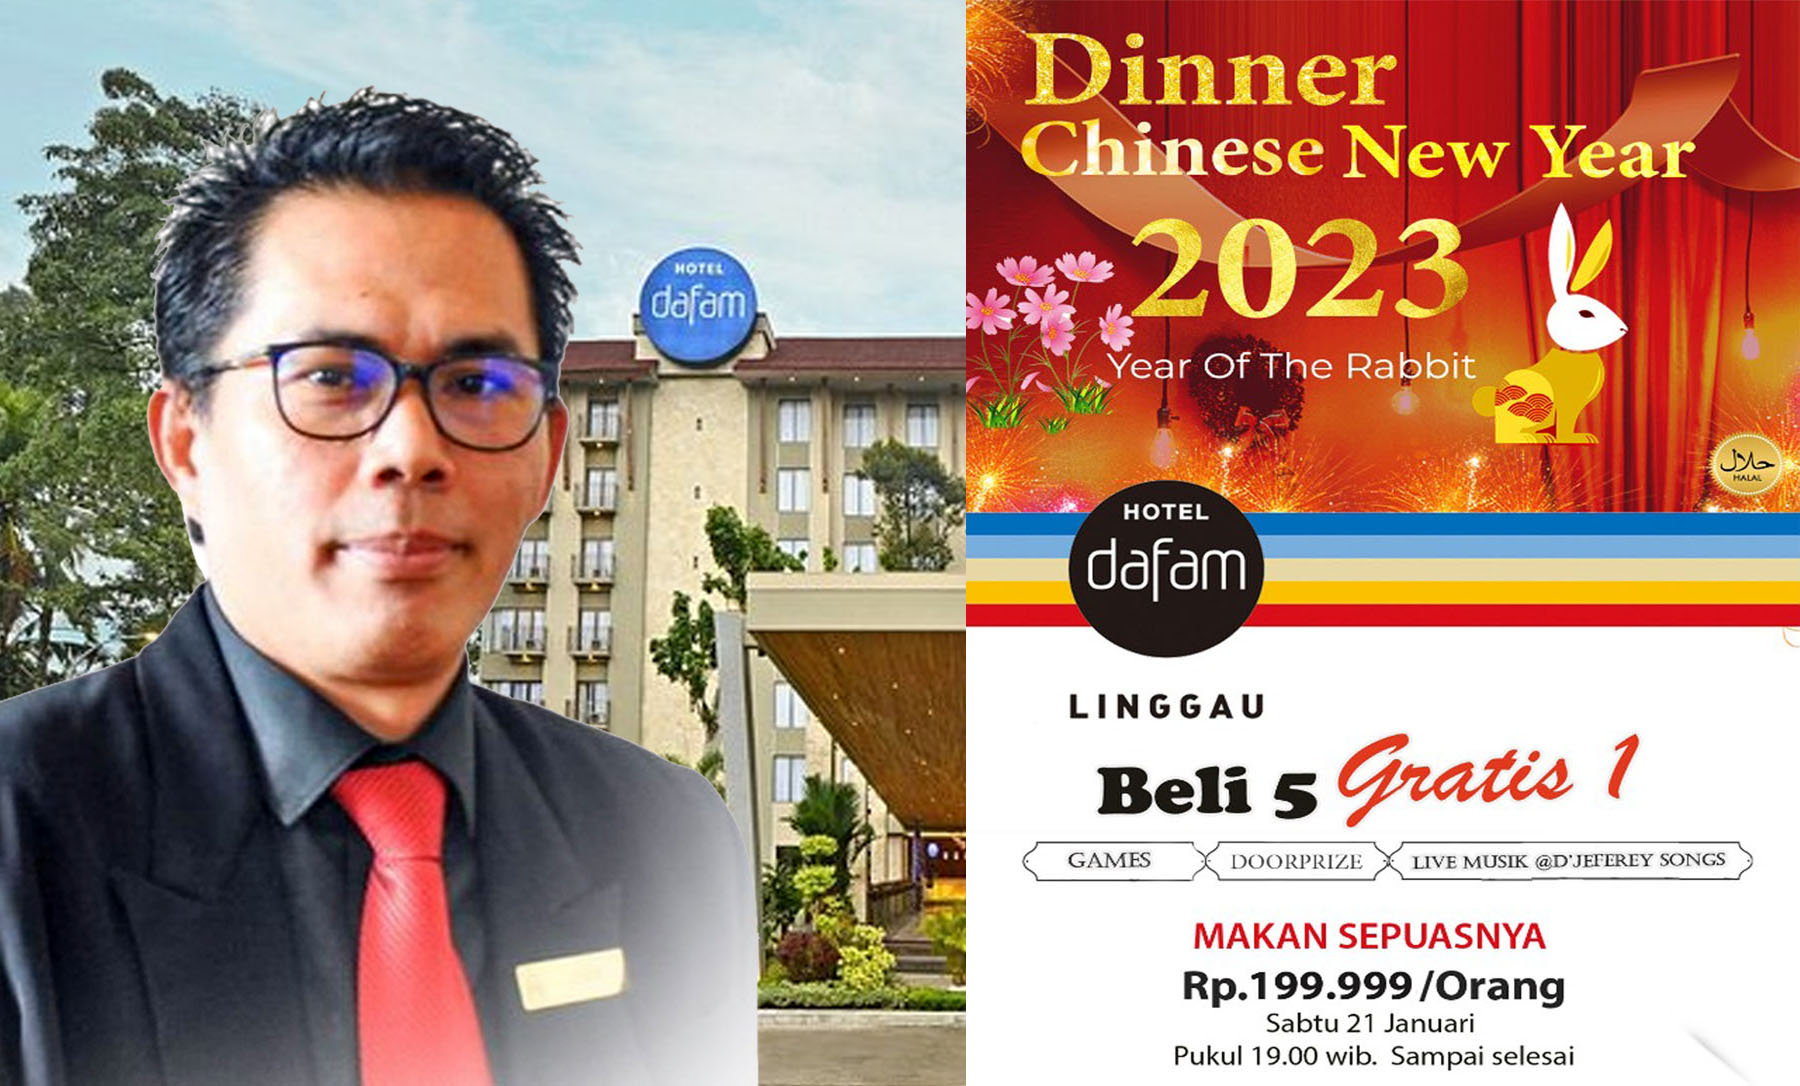 Yuk Nikmati Dinner Chinese New Year 2023 Bersama Keluarga di Hotel Dafam Linggau